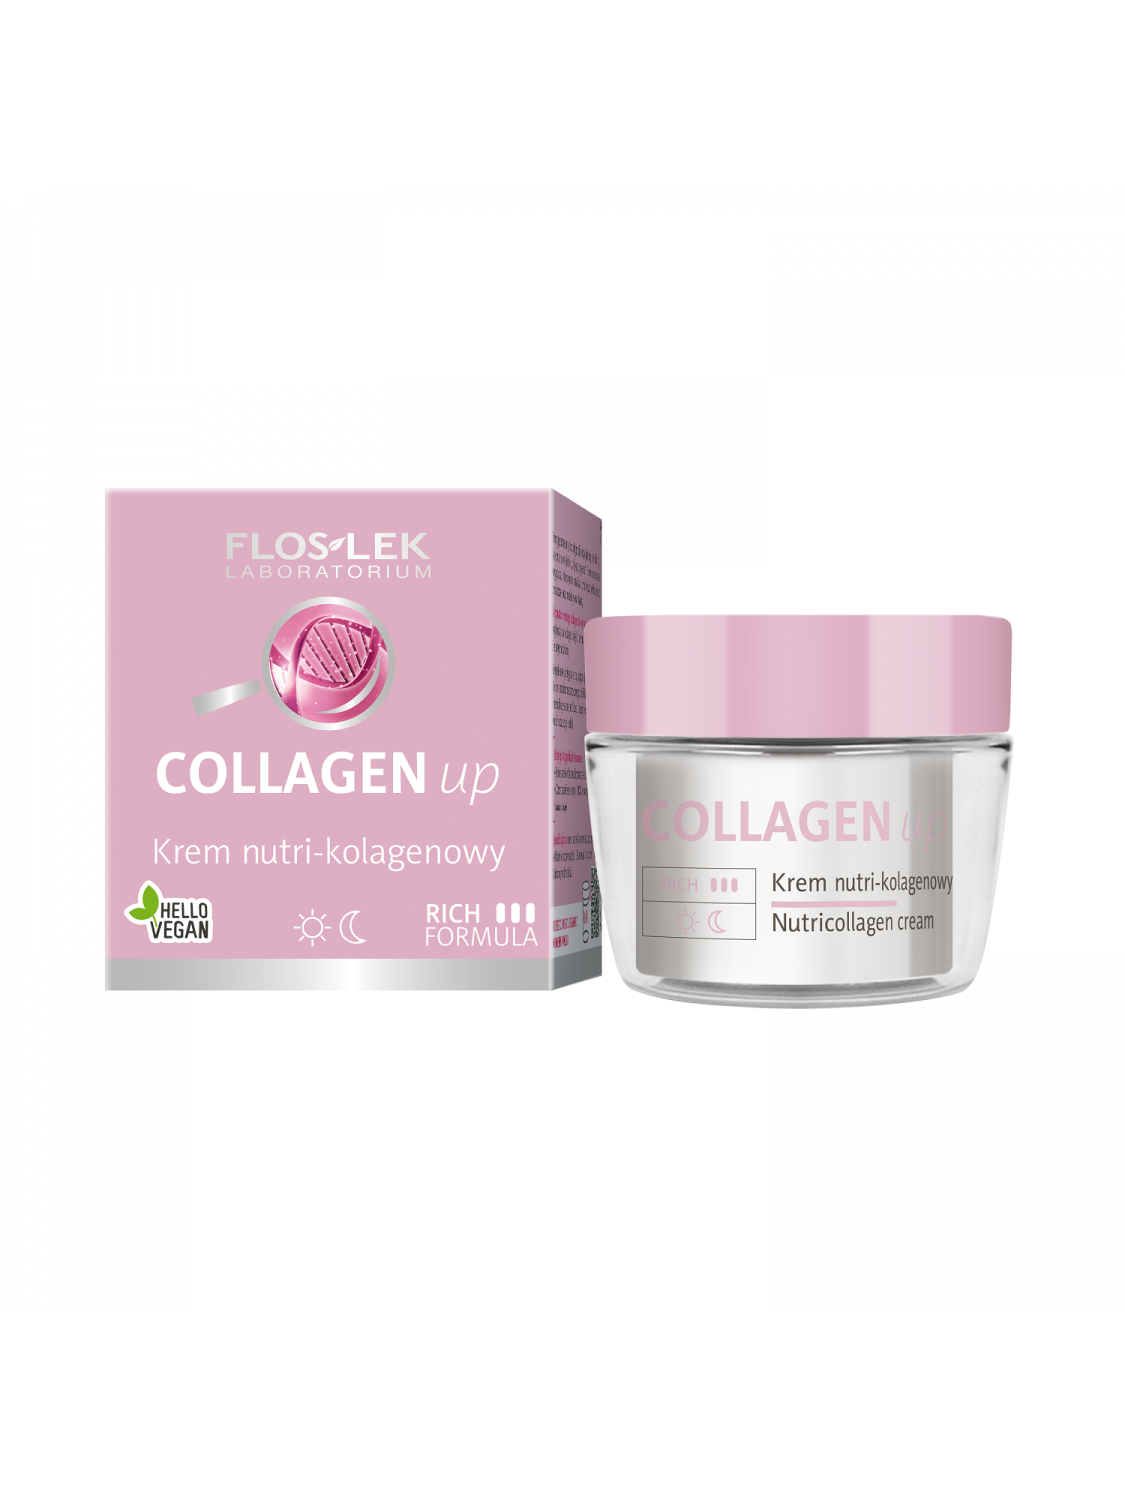 COLLAGEN up® Nutricollagen cream - 50 ml - Floslek